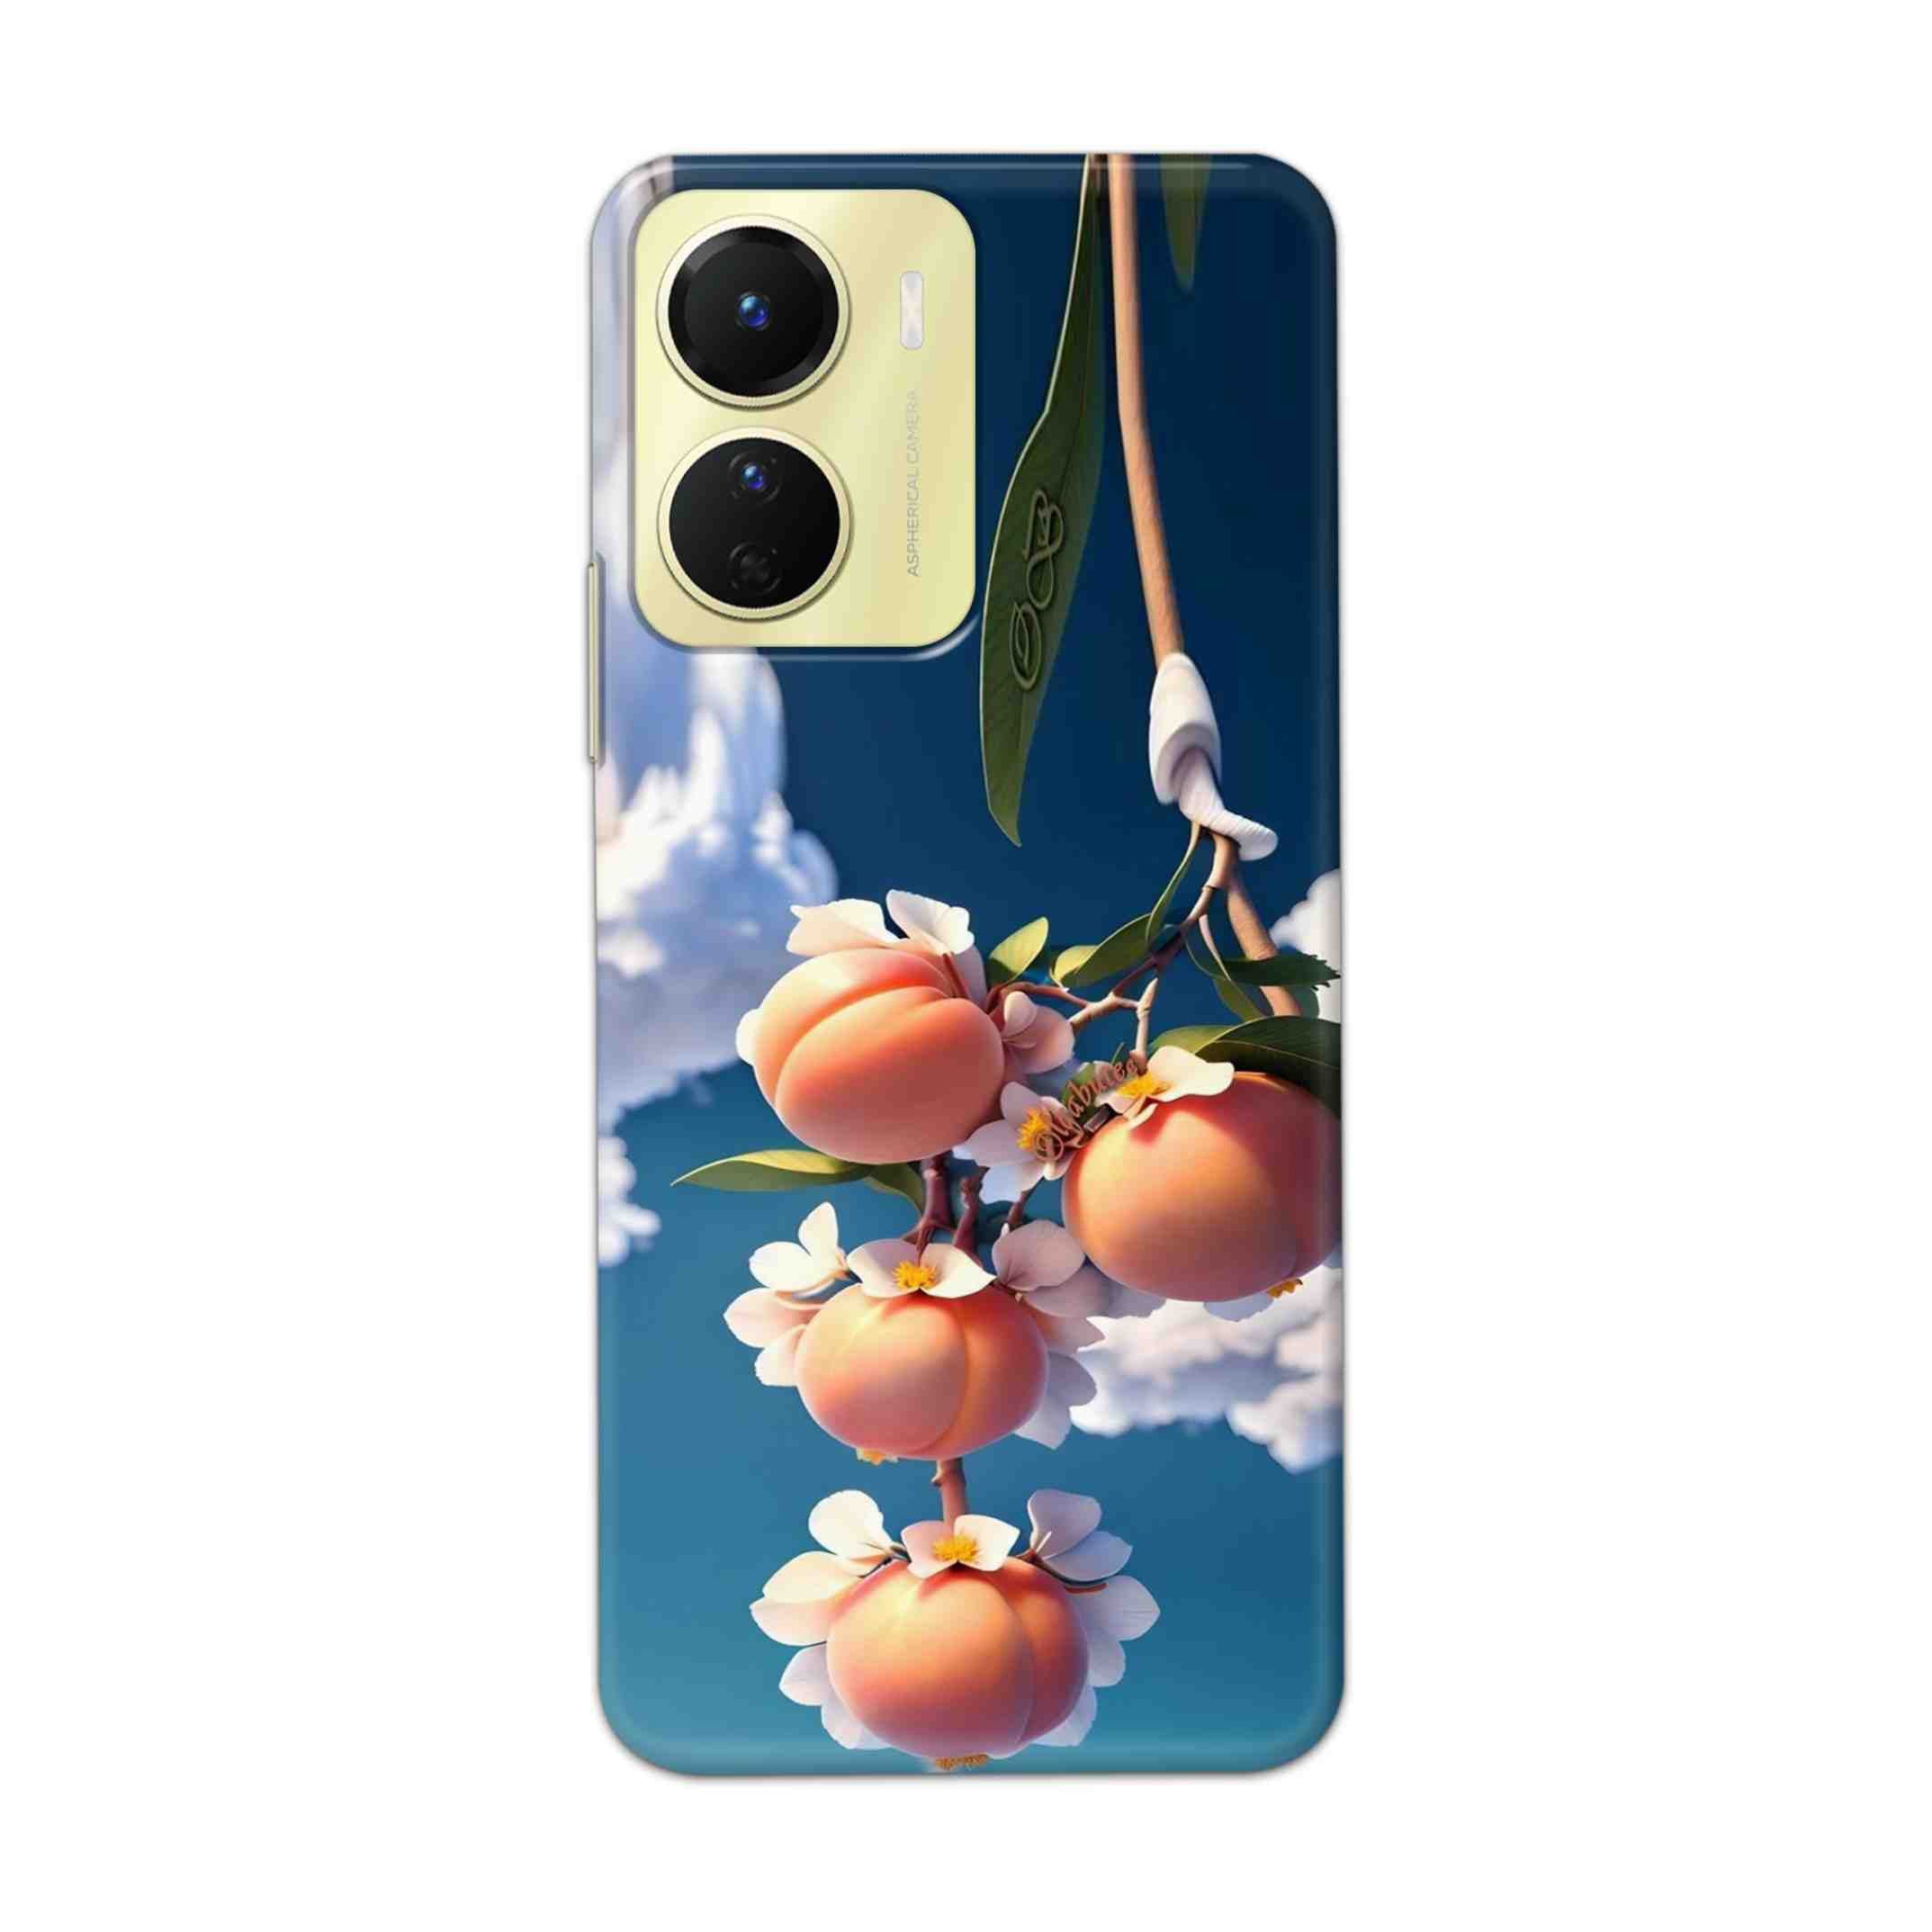 Buy Fruit Hard Back Mobile Phone Case Cover For Vivo Y16 Online